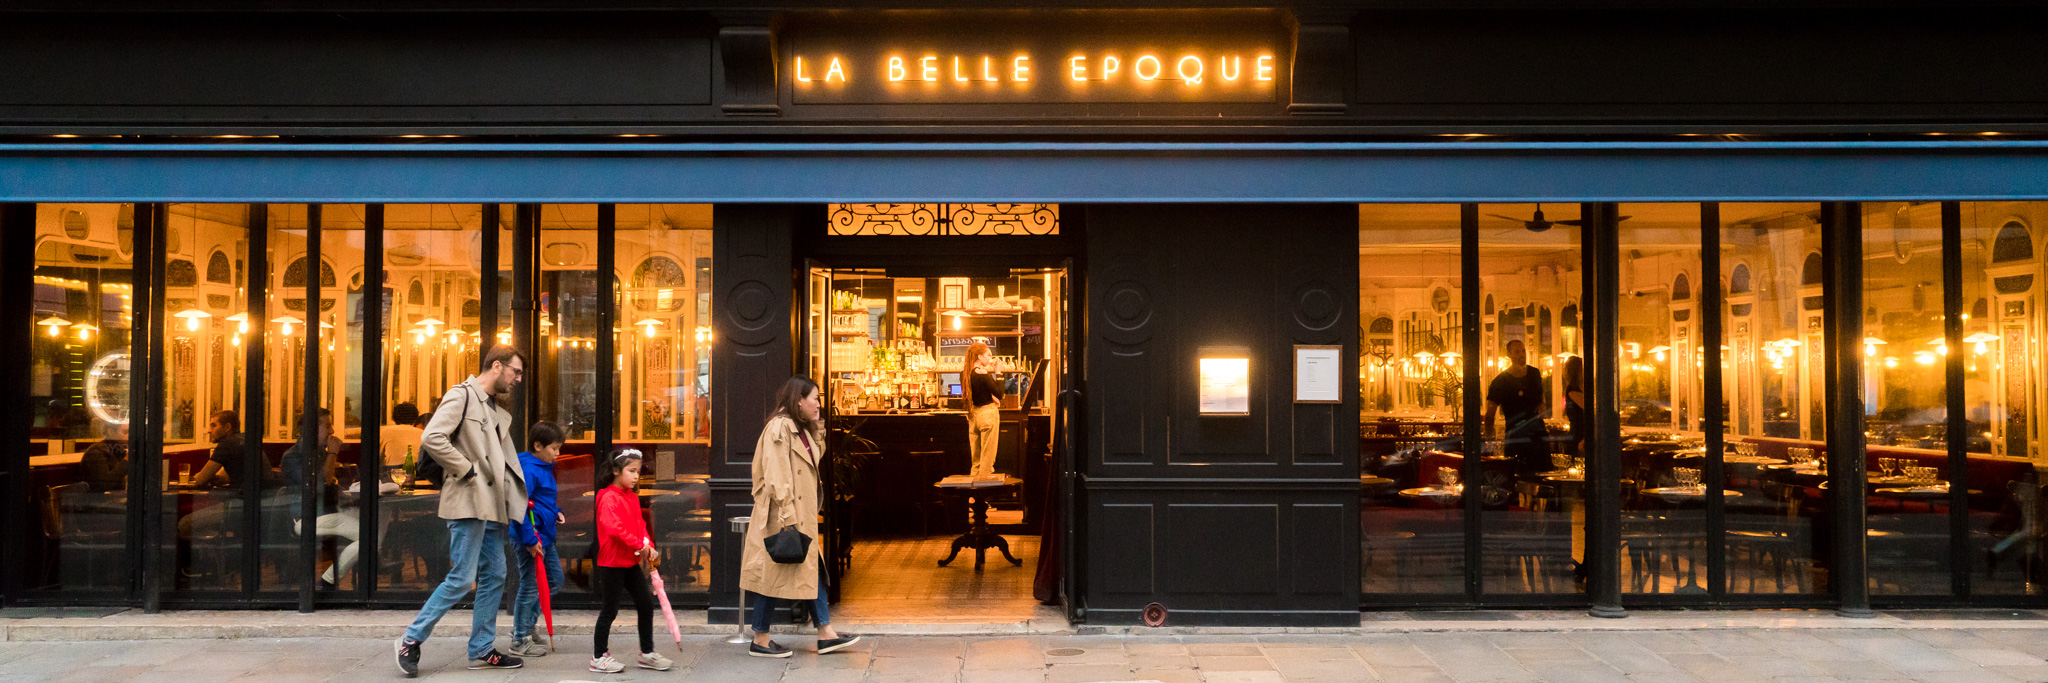 La Belle Epoque restaurant in Paris